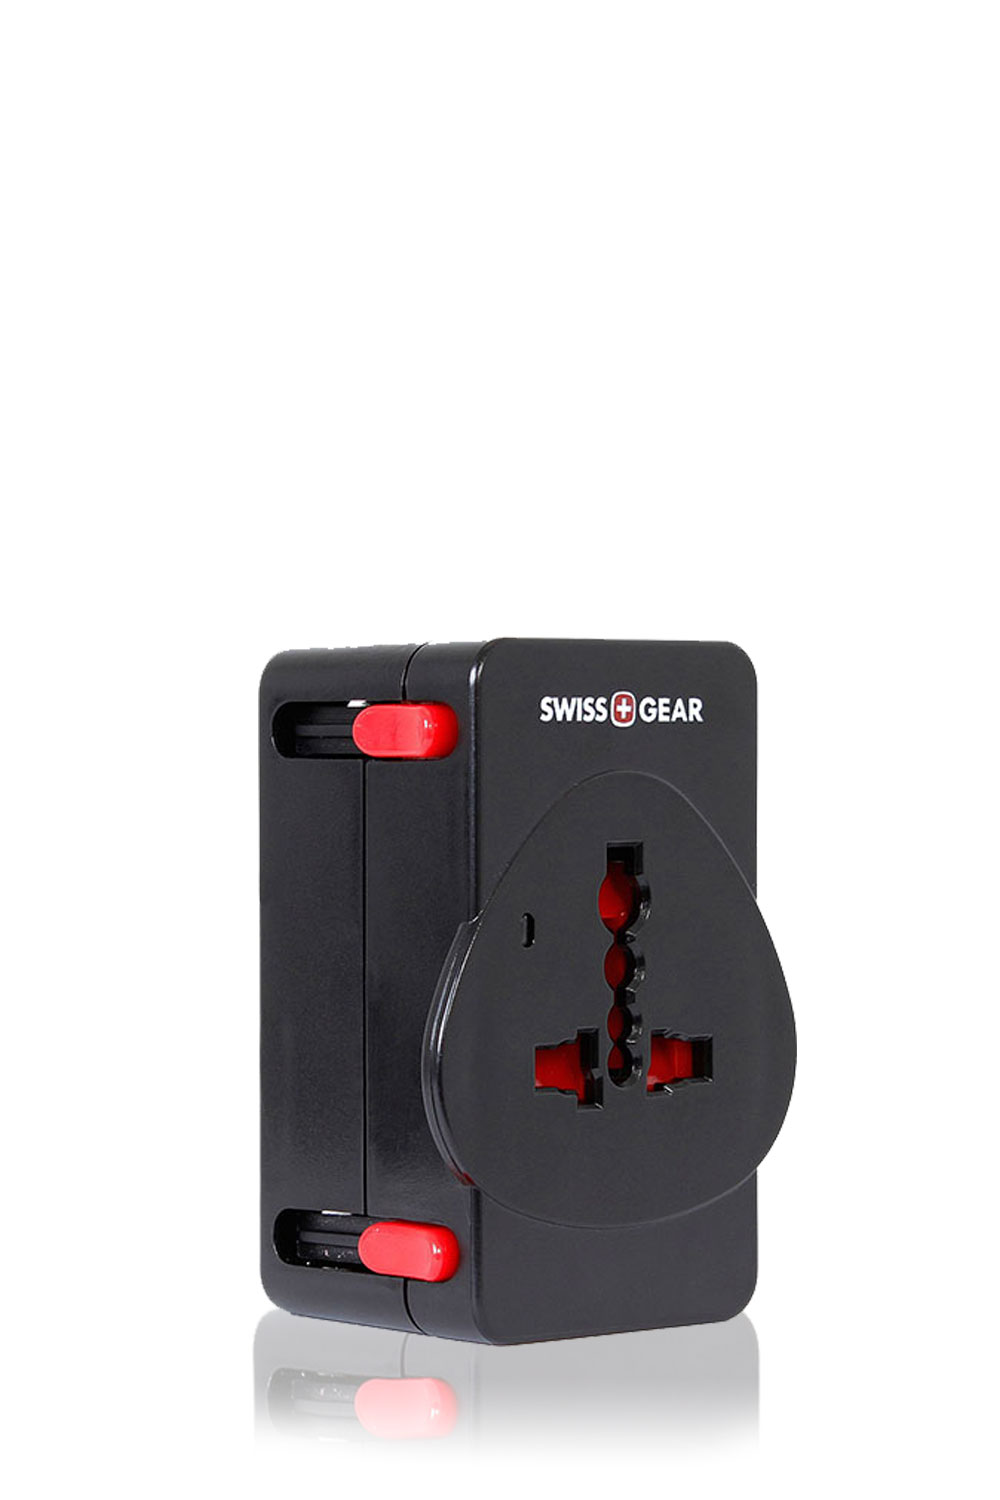 Swiss Gear International Worldwide Travel Adapter Plug WJ3172BK Swiss+Gear NEW 